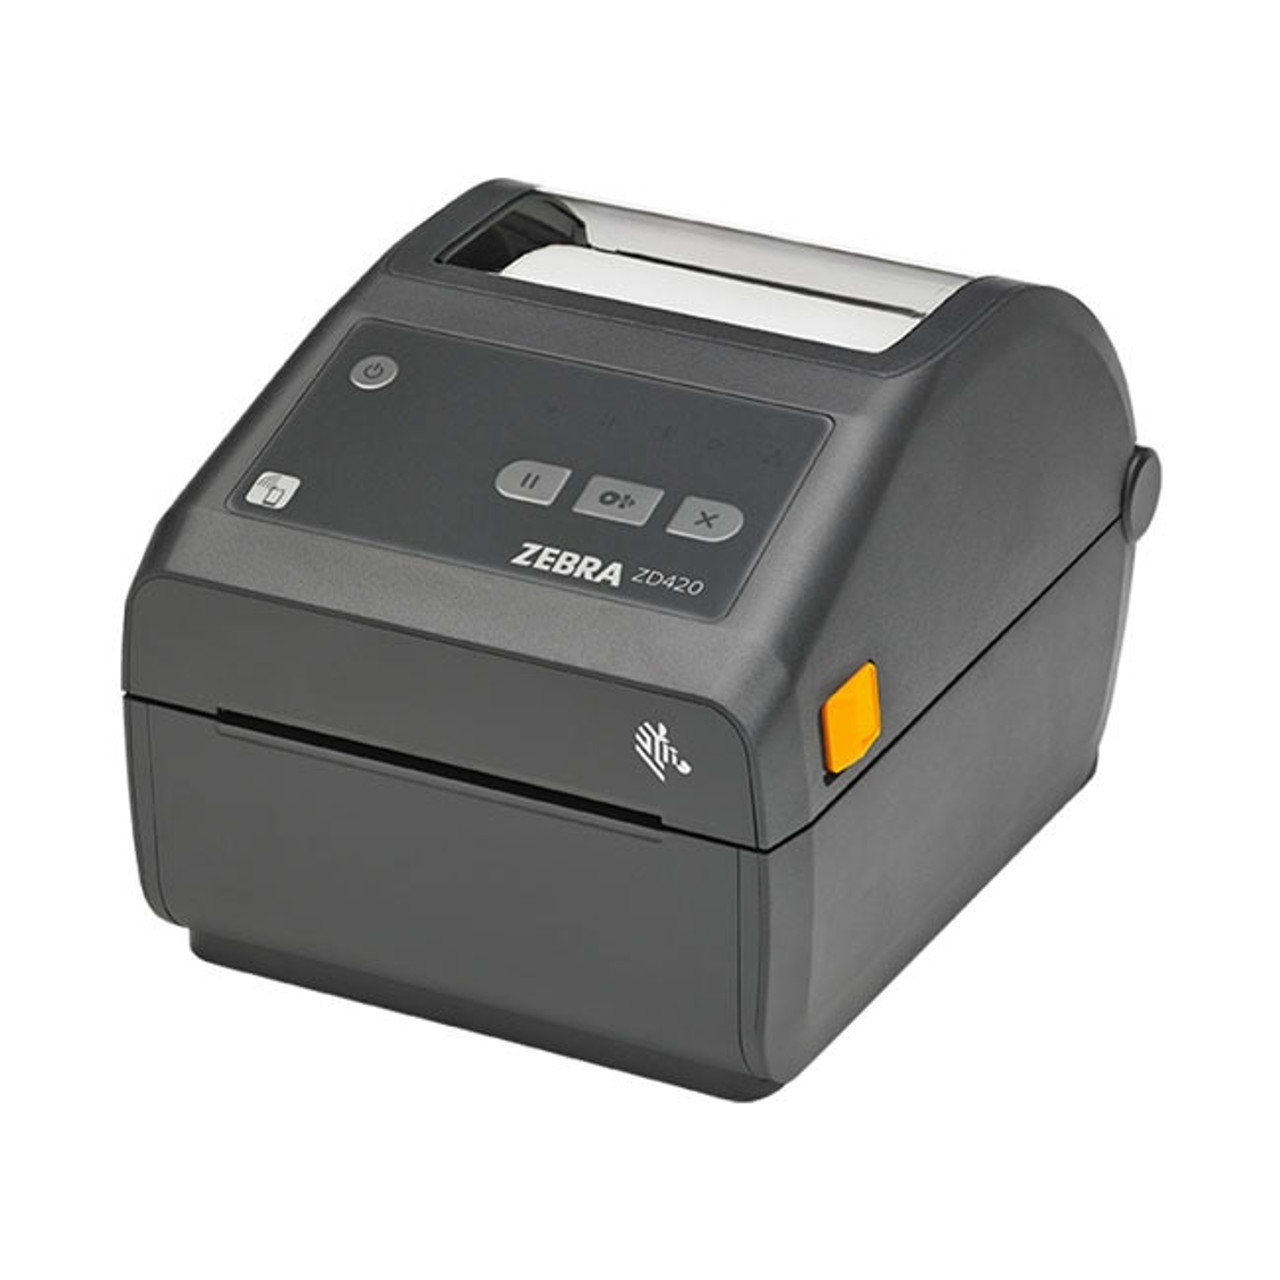 Zebra Zd420 Direct Thermal Desktop Printer Label Printers Australia 8978